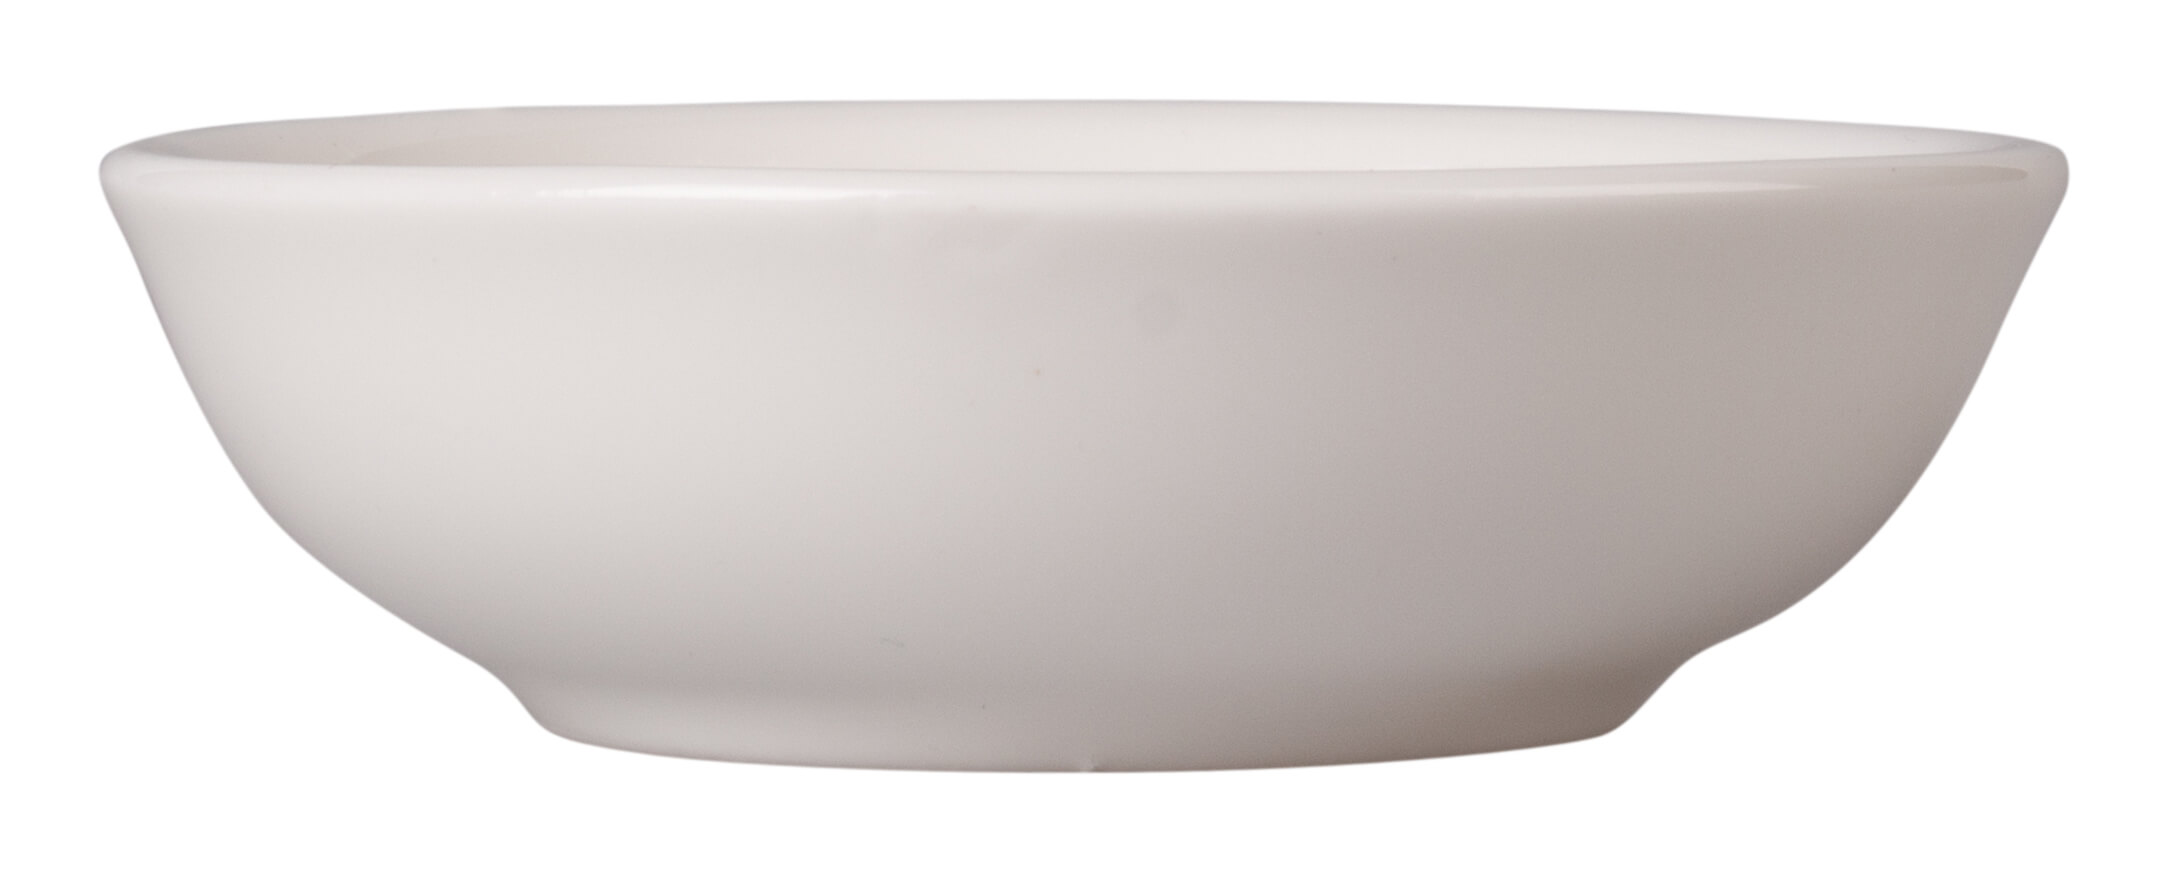 Dipschale rund, Keramik, weiß - 40ml (1 Stk.)